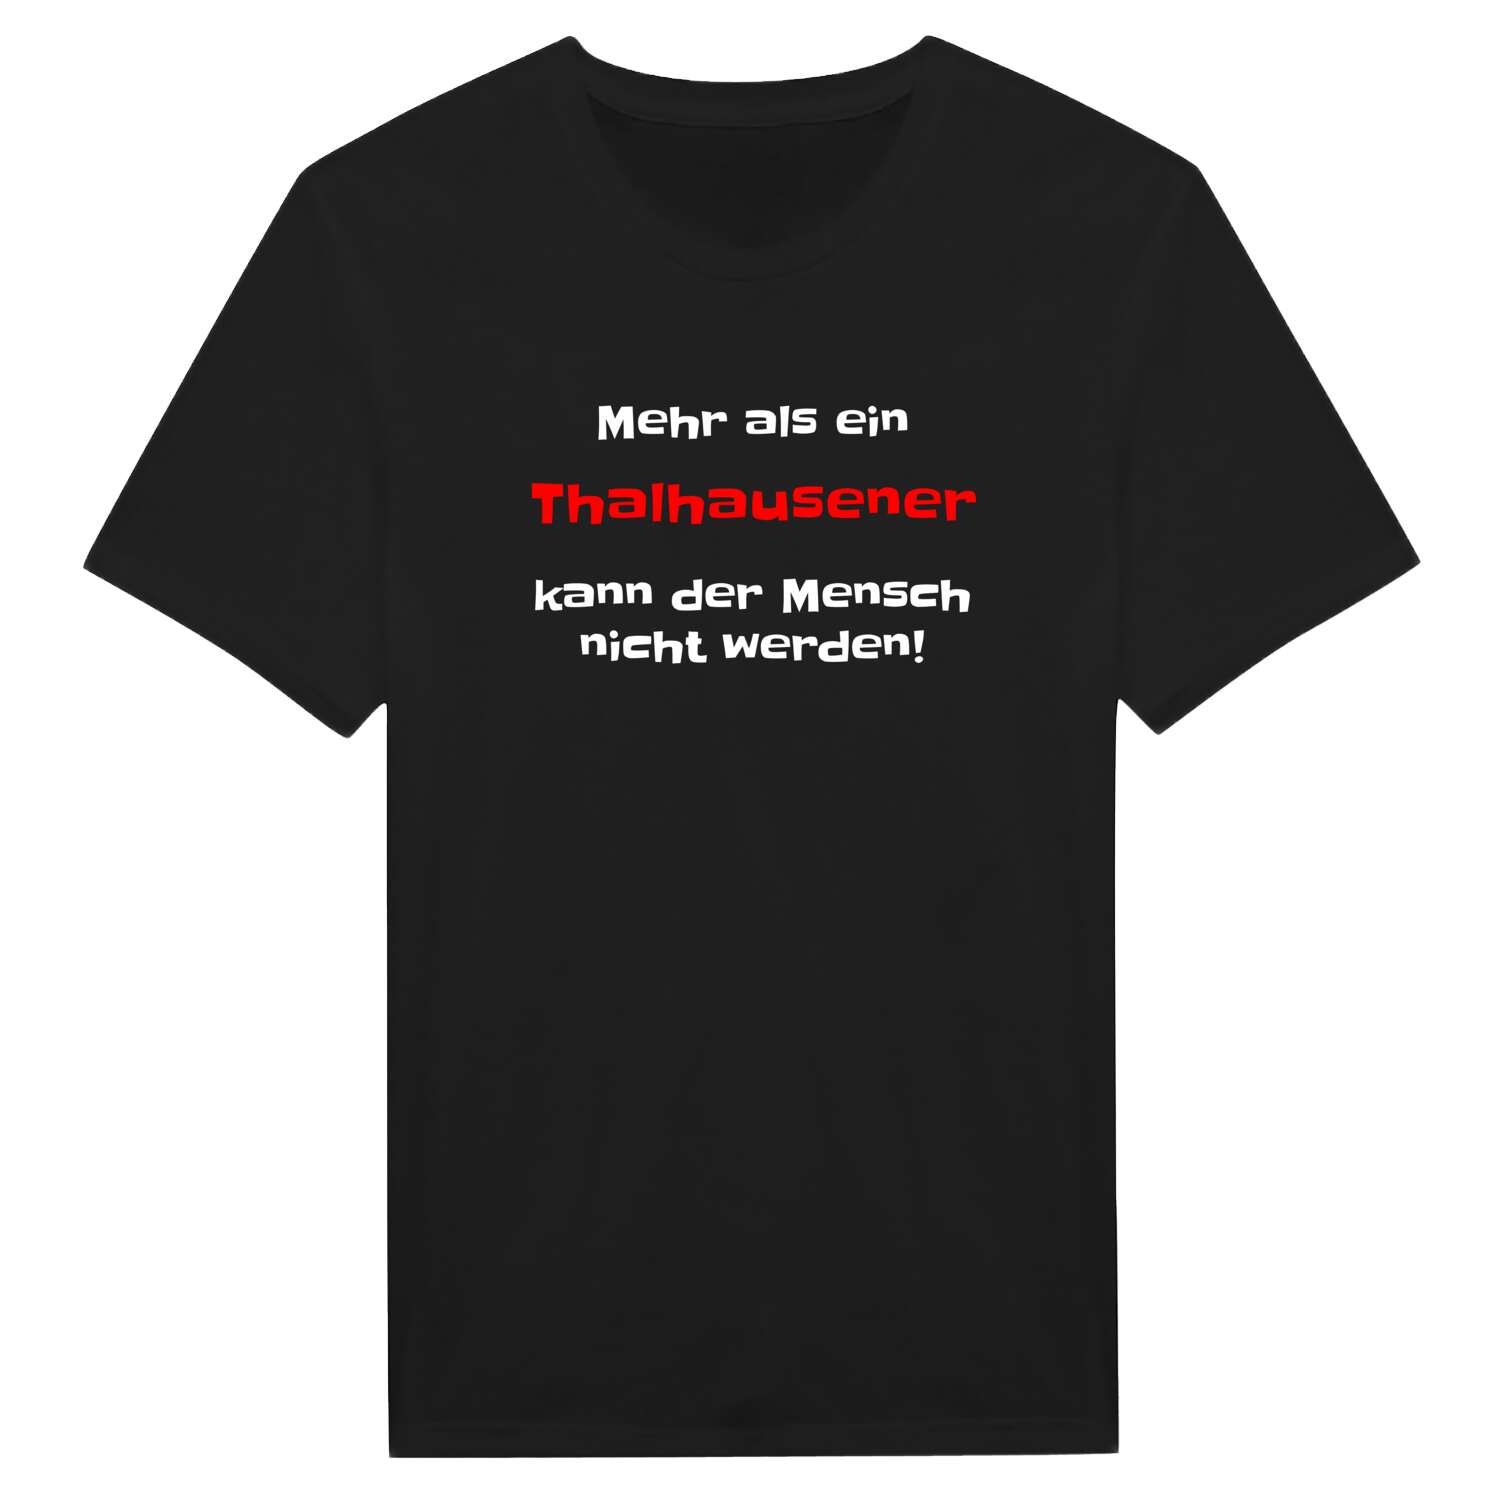 Thalhausen T-Shirt »Mehr als ein«